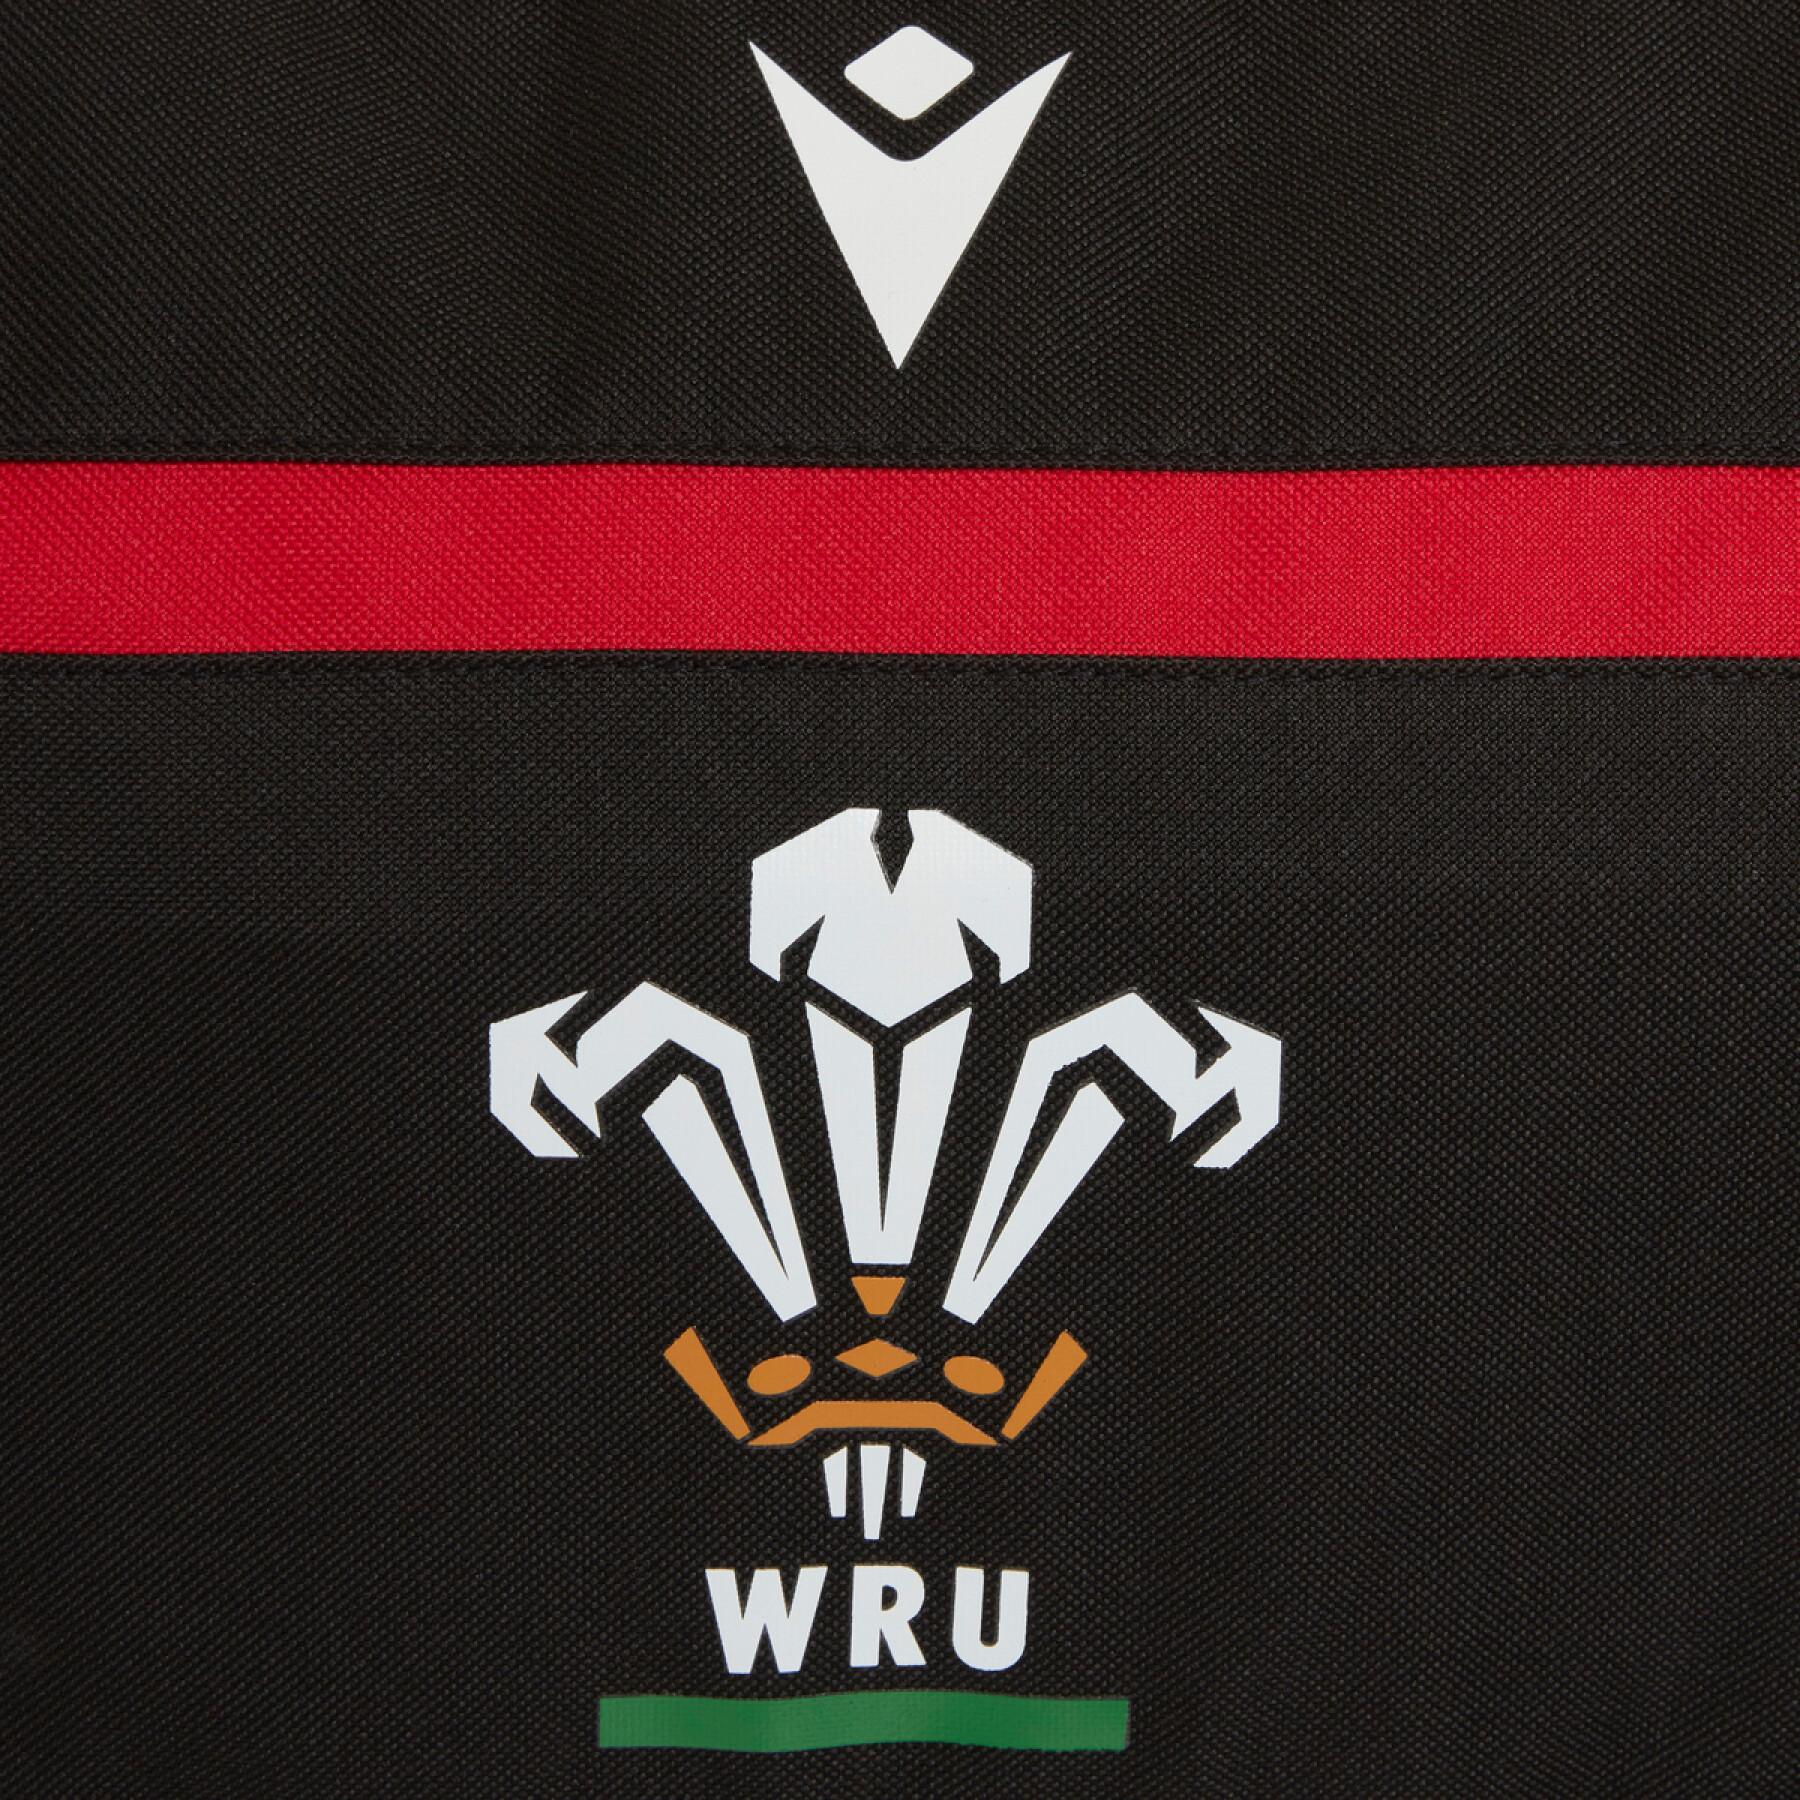 Sporttasche Pays de Galles rugby 2020/21